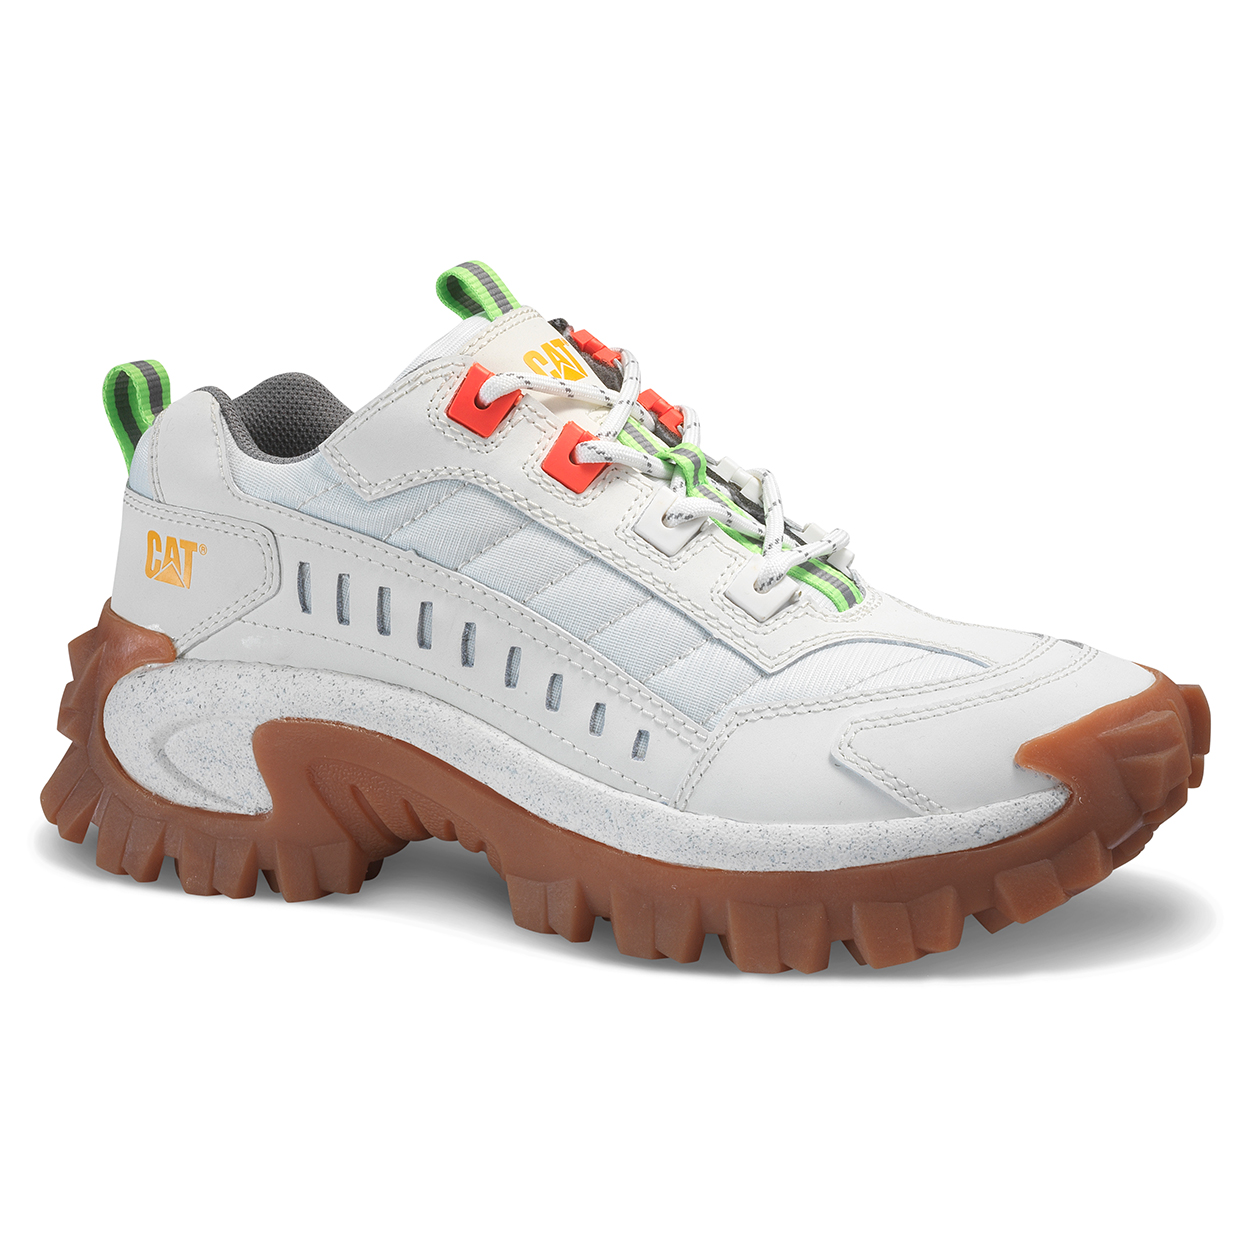 Caterpillar Shoes Online Pakistan - Caterpillar Intruder Womens Sneakers White (785124-KQE)